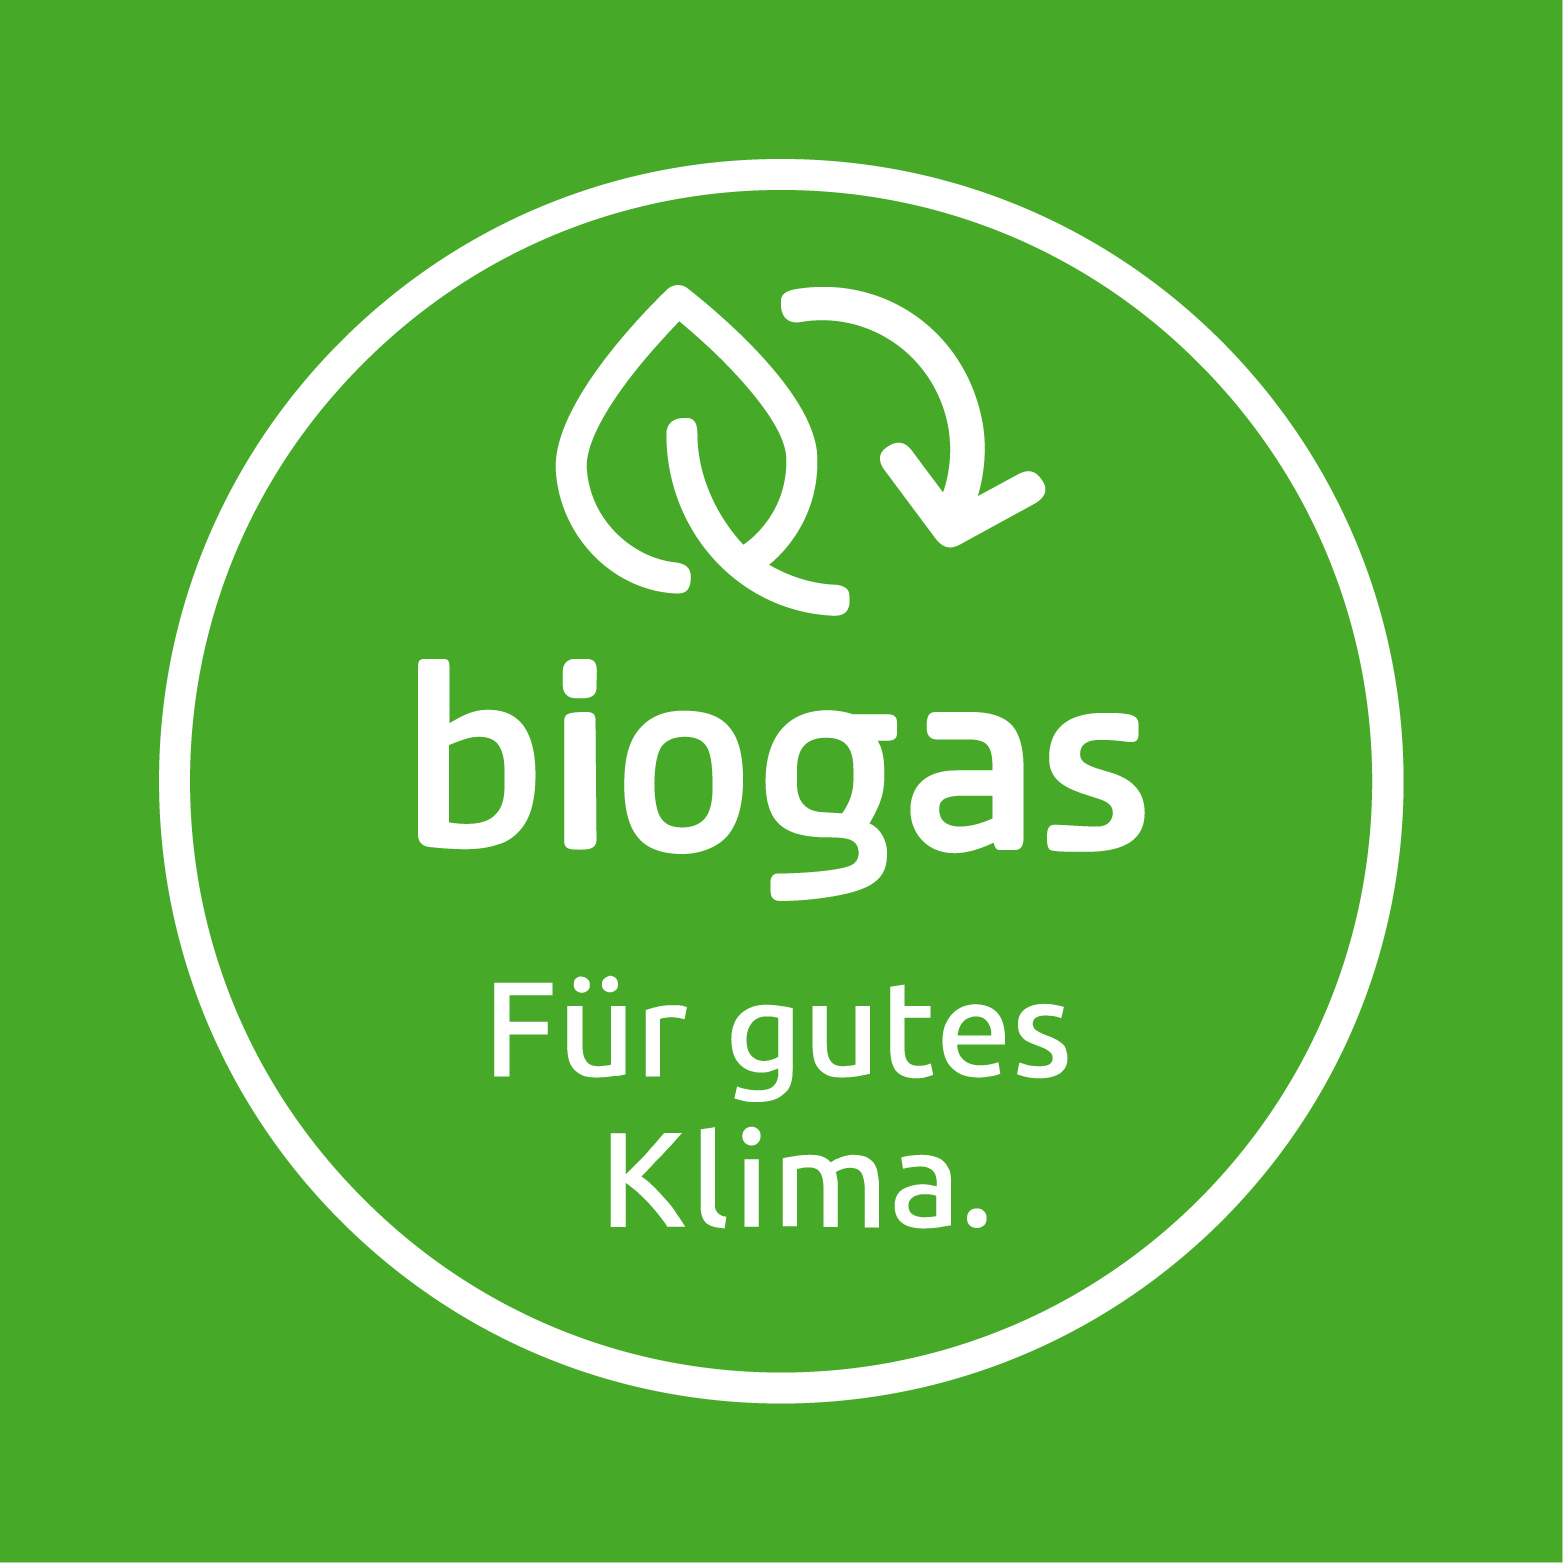 Das Siegel Biogas in Weiß